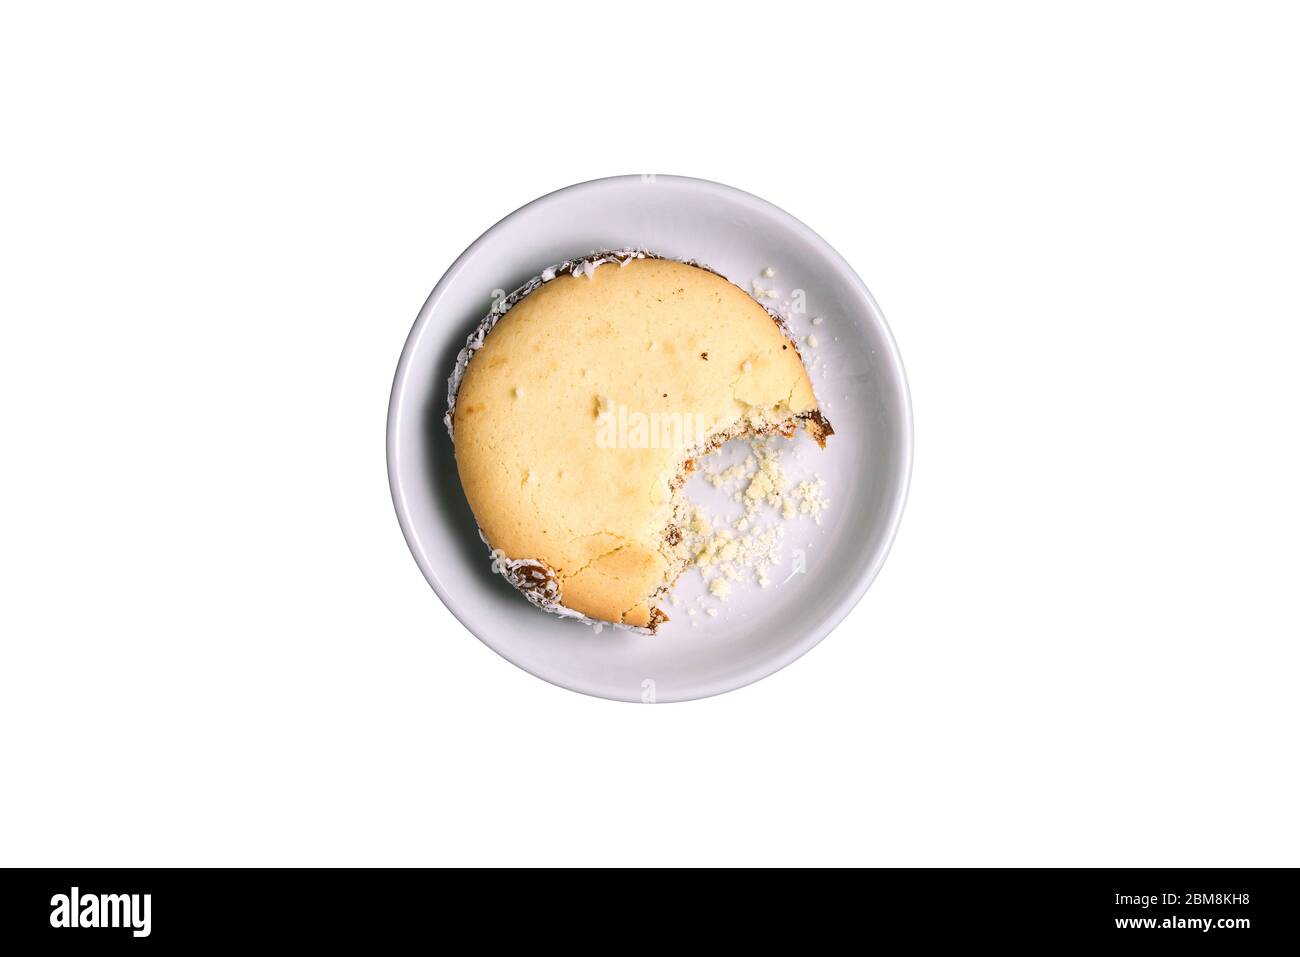 Morso i biscotti in un piatto, isolato su uno sfondo bianco. Deliziose torte fatte in casa Foto Stock